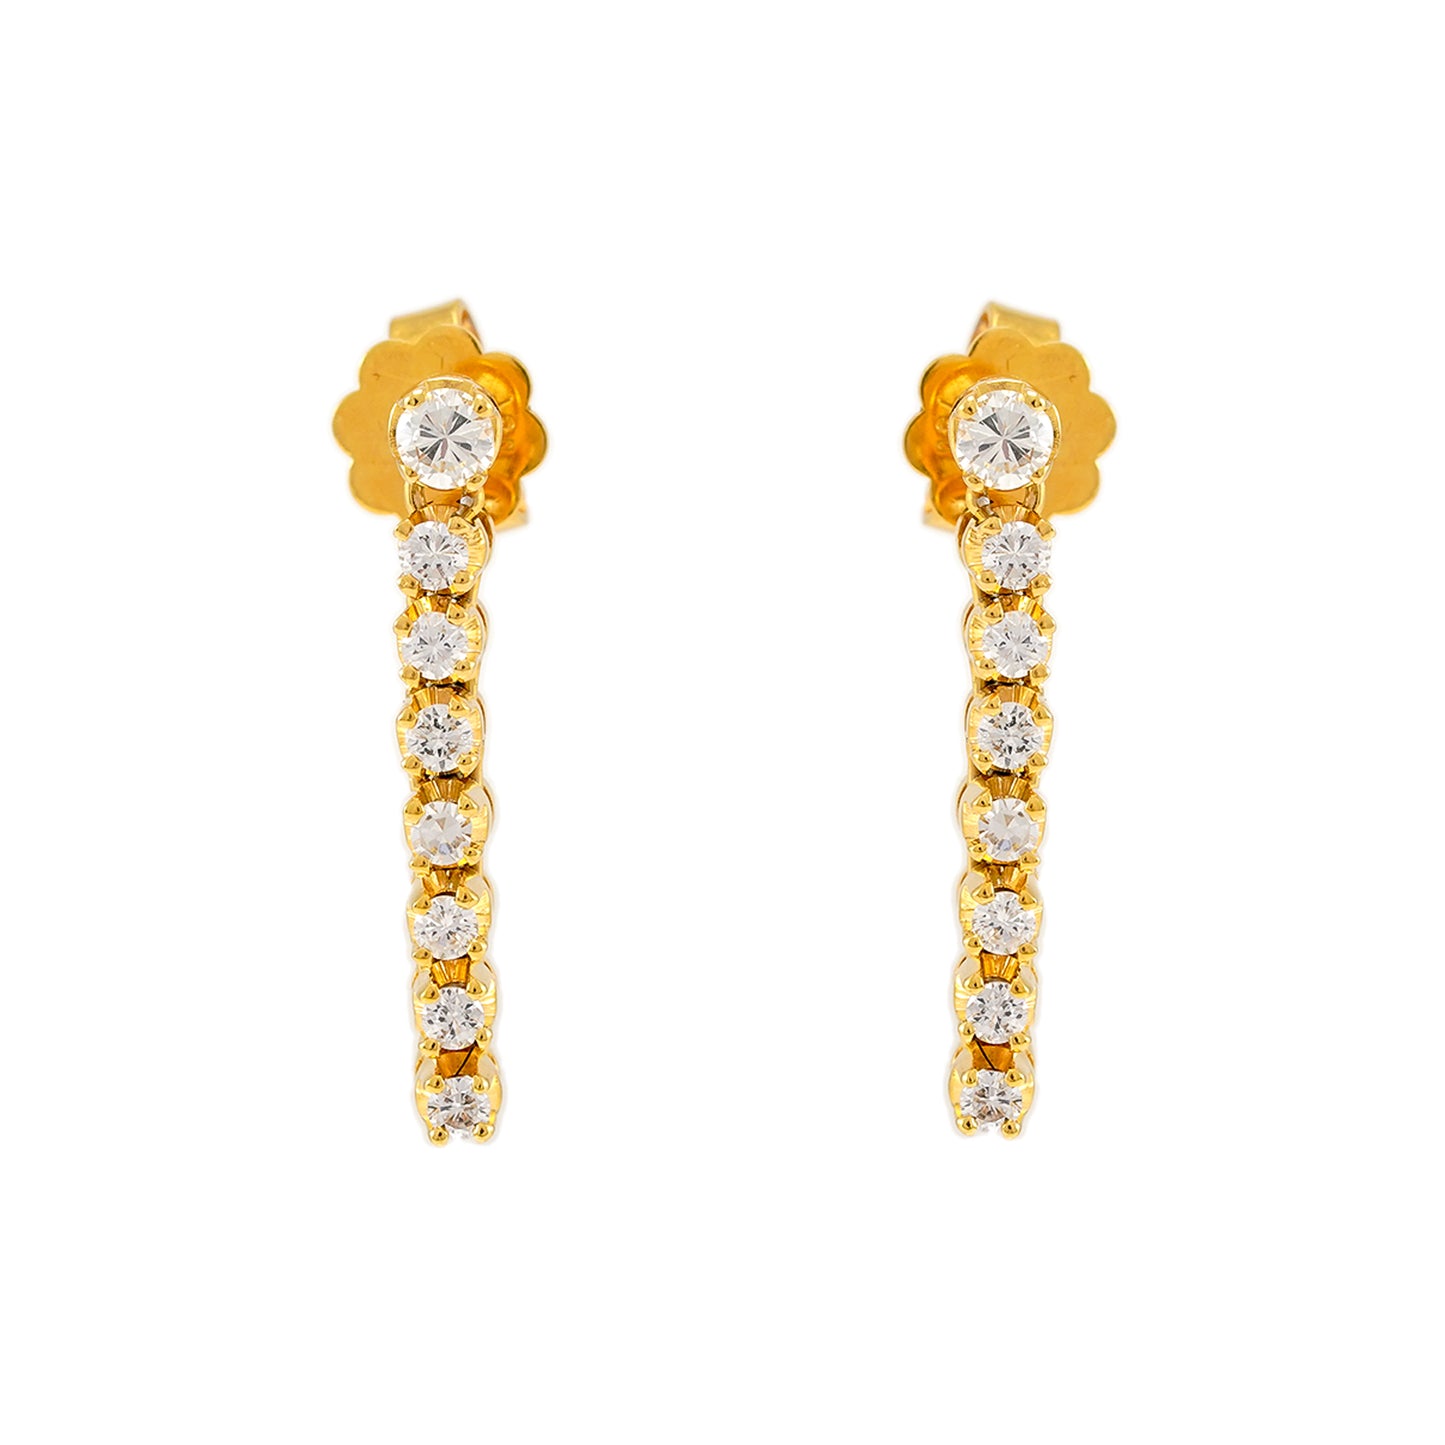 Diamond stud earrings yellow gold 18K women's jewelry gold earrings diamond earrings